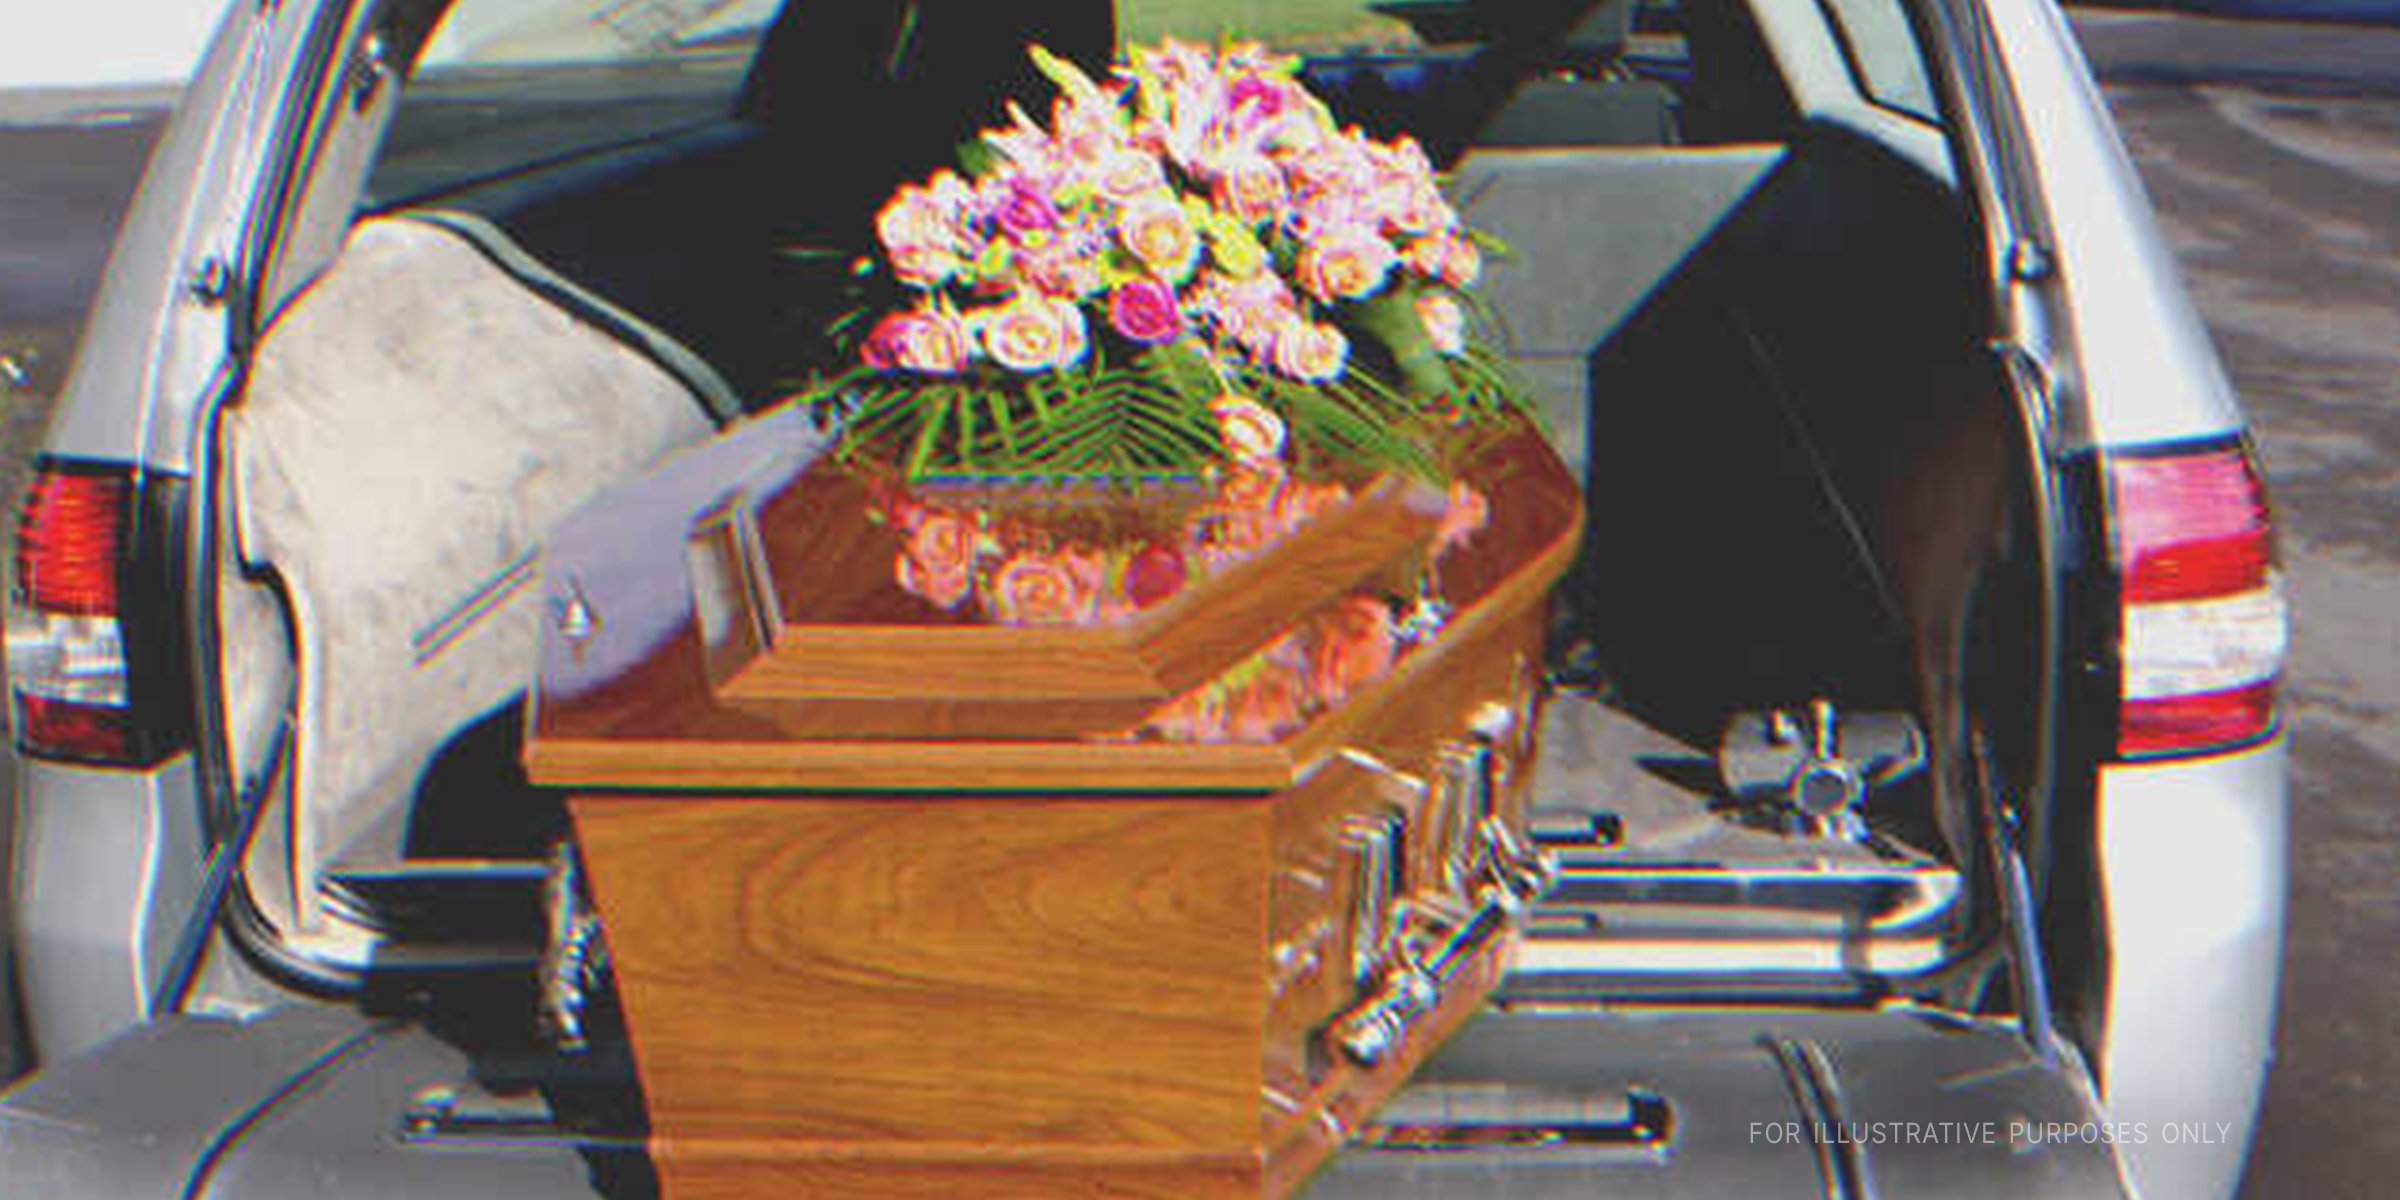 A casket inside a hearse | Source: Shutterstock